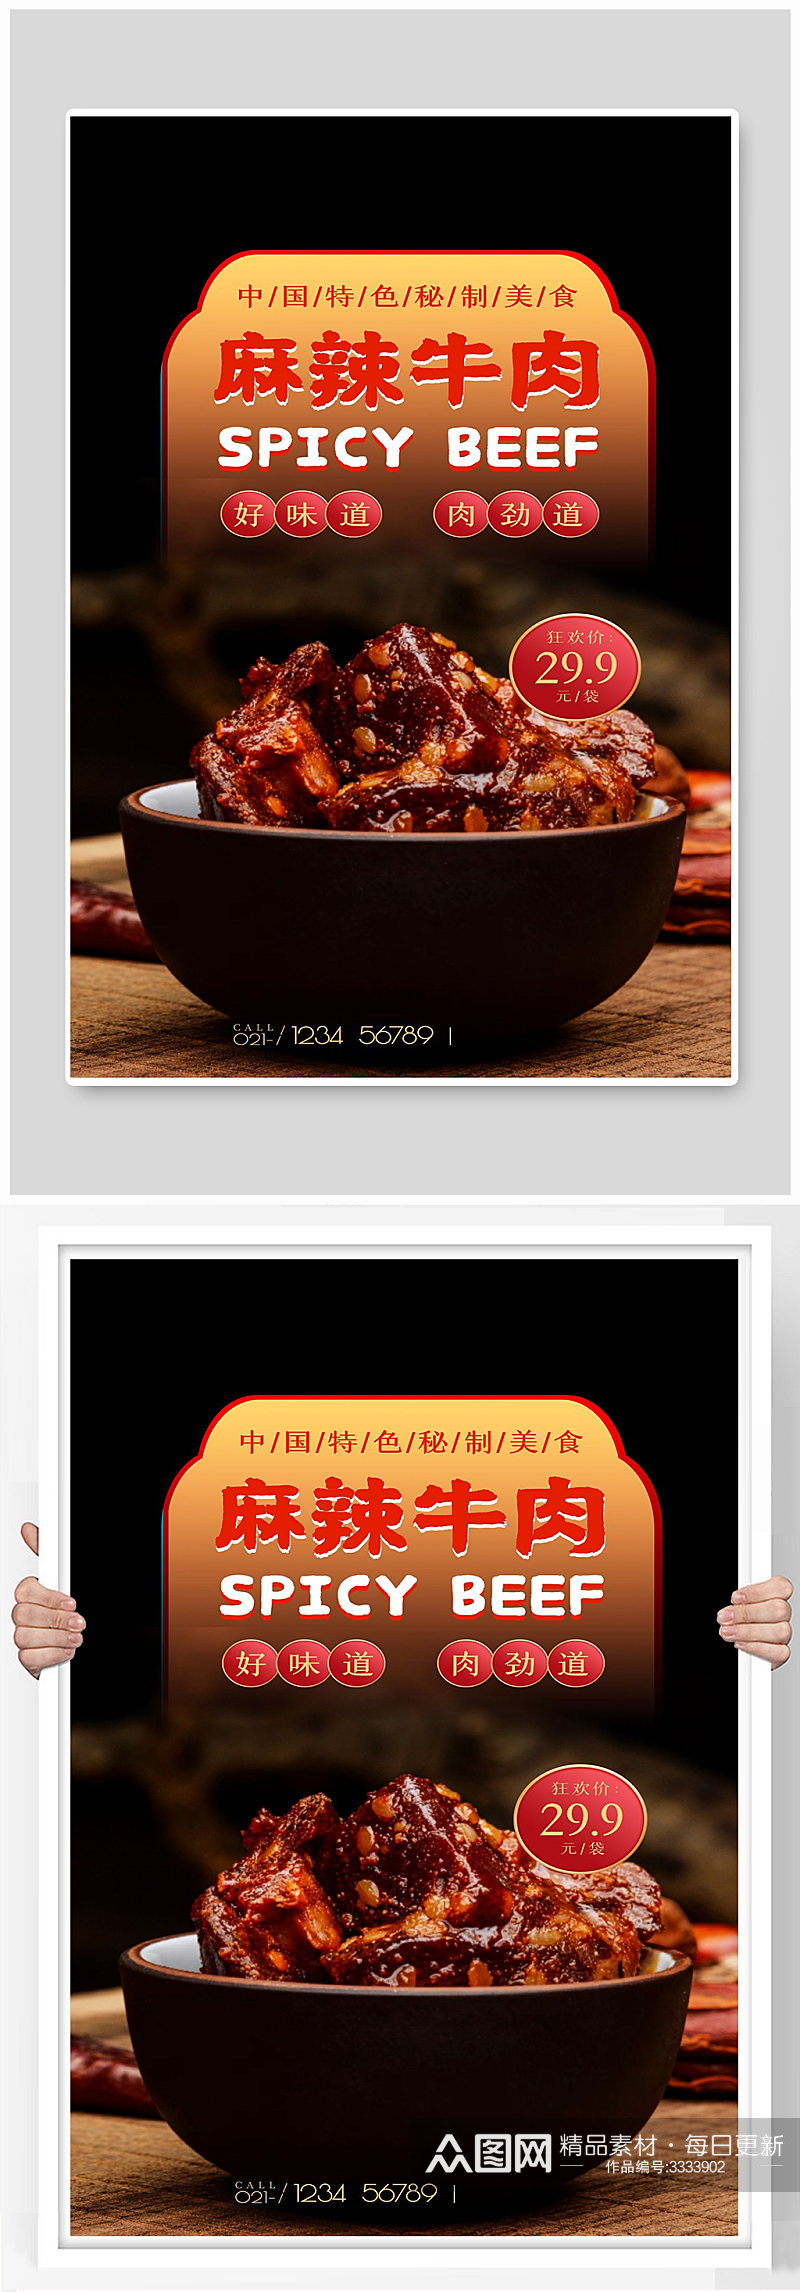 麻辣牛肉宣传海报设计素材